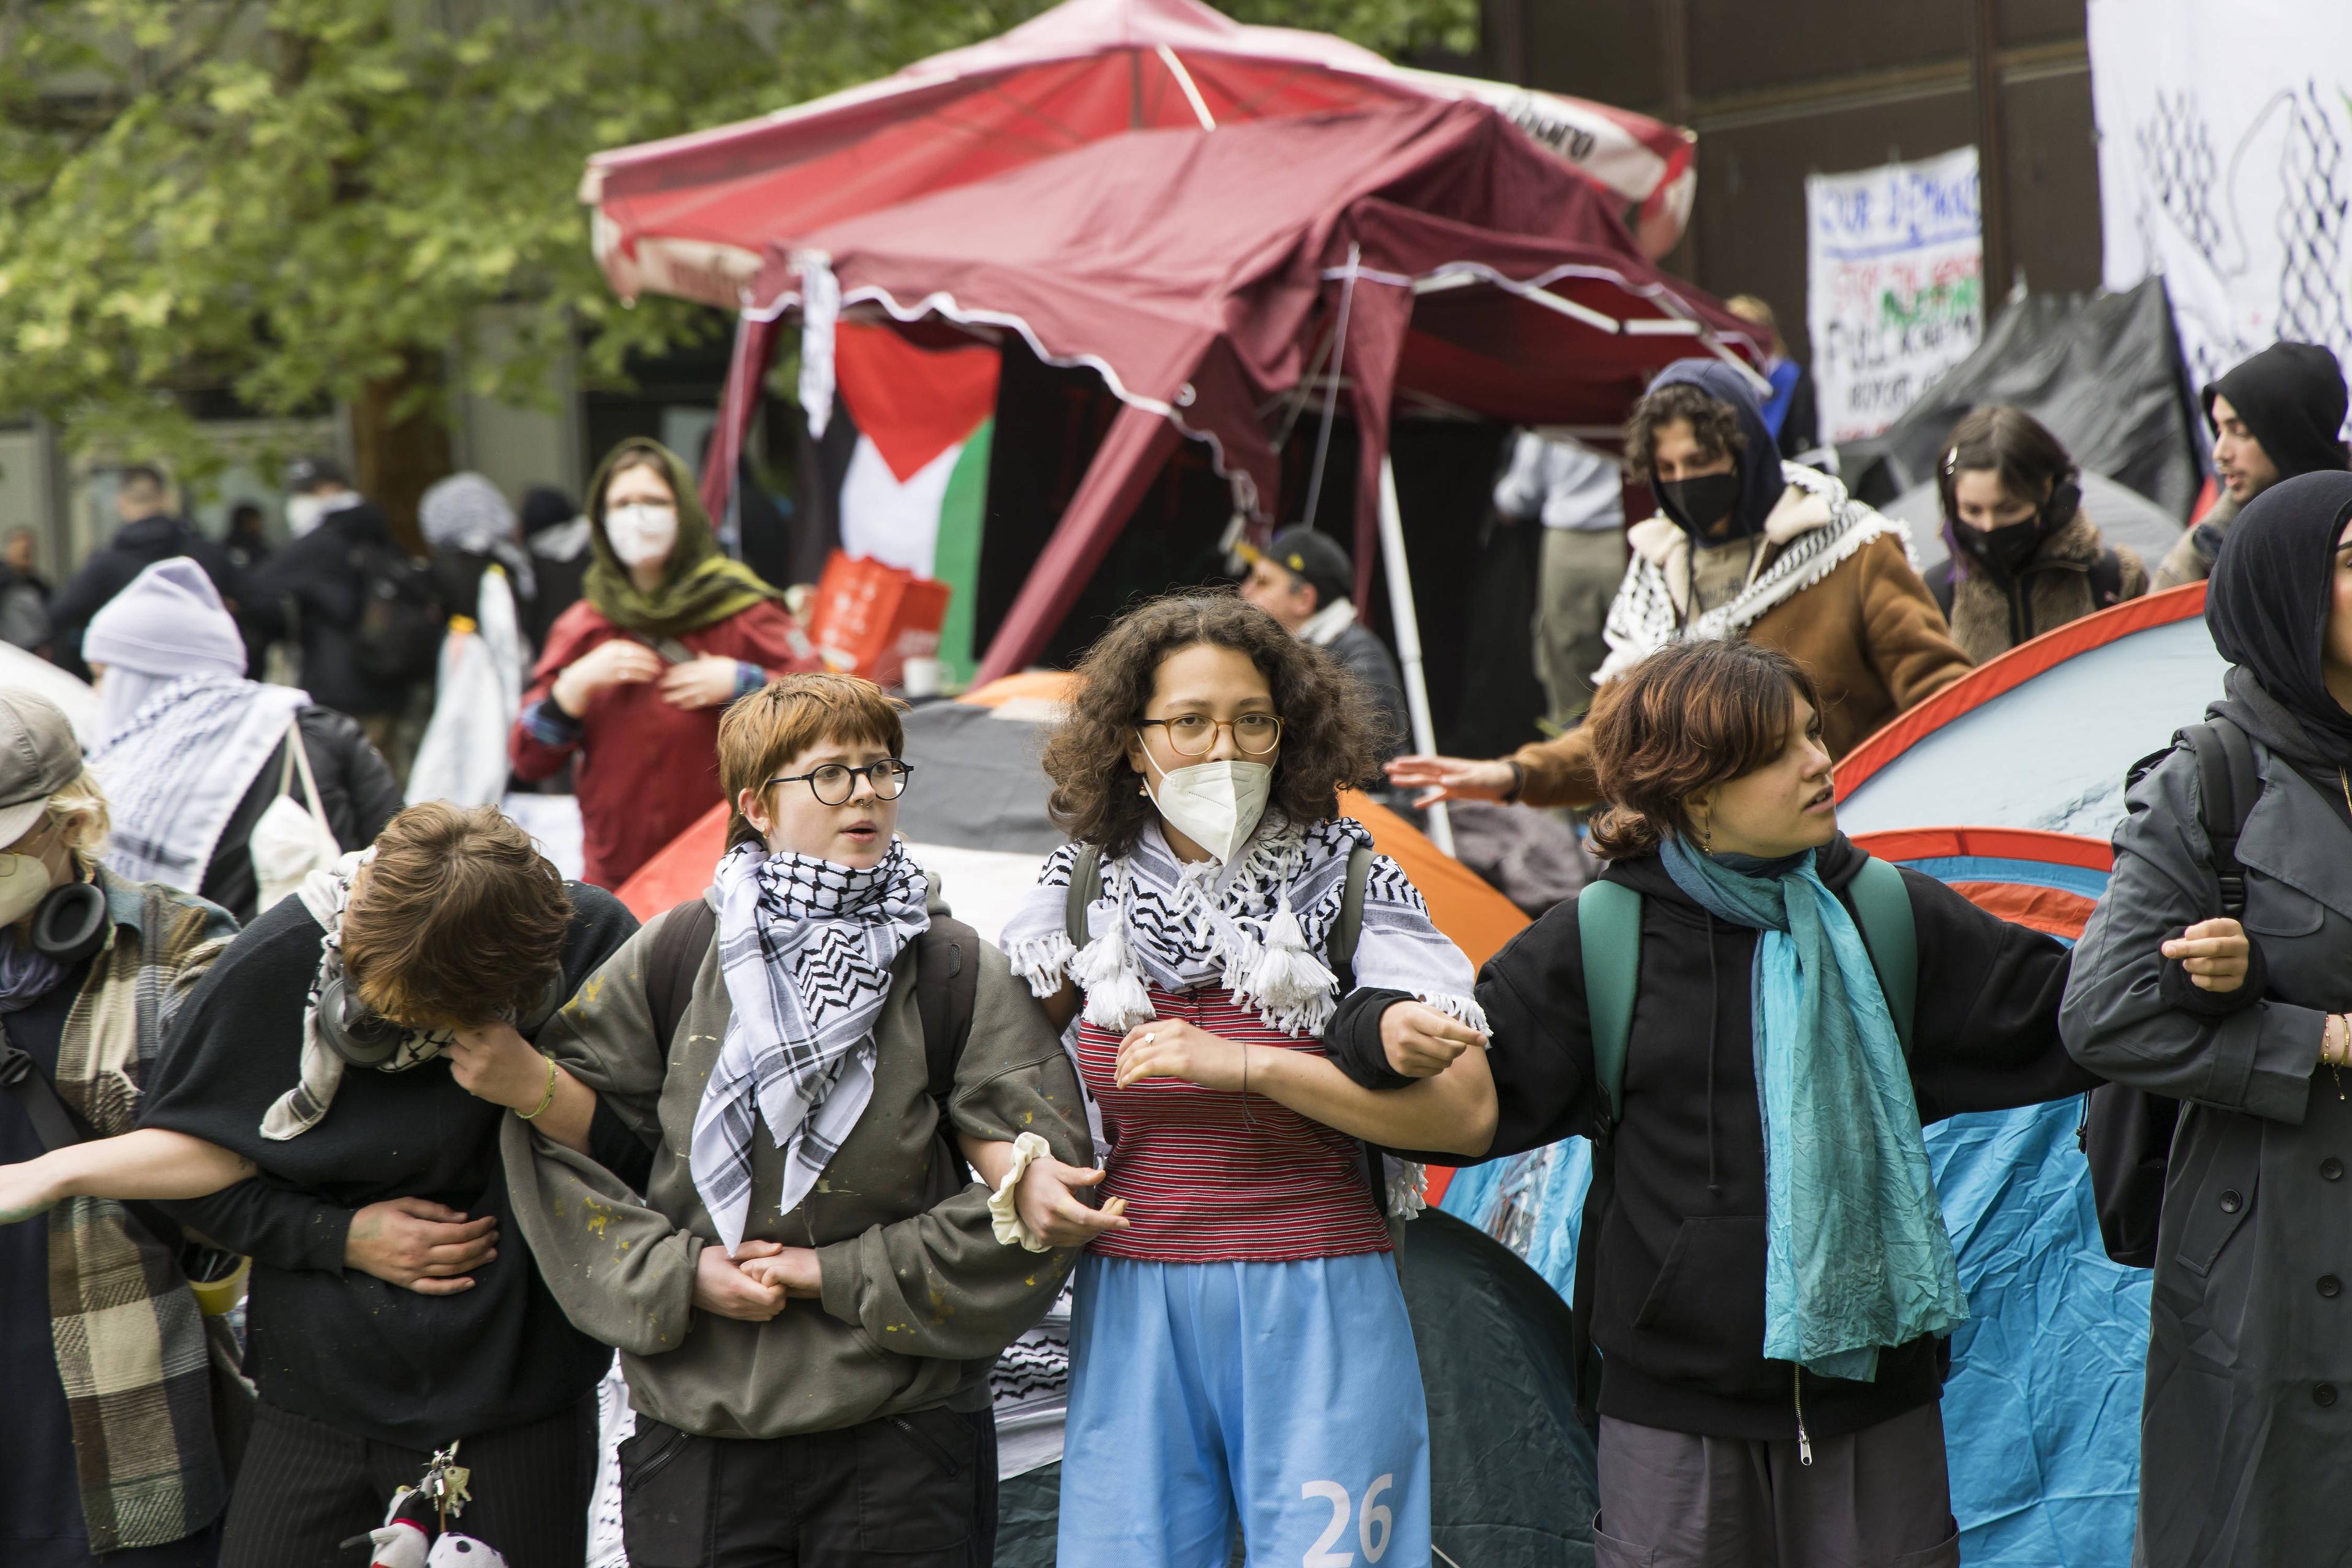 Menschenkette während der Besetzung eines Innenhofs an der FU Berlin durch pro-palästinensische Aktivistinnen und Aktivisten.